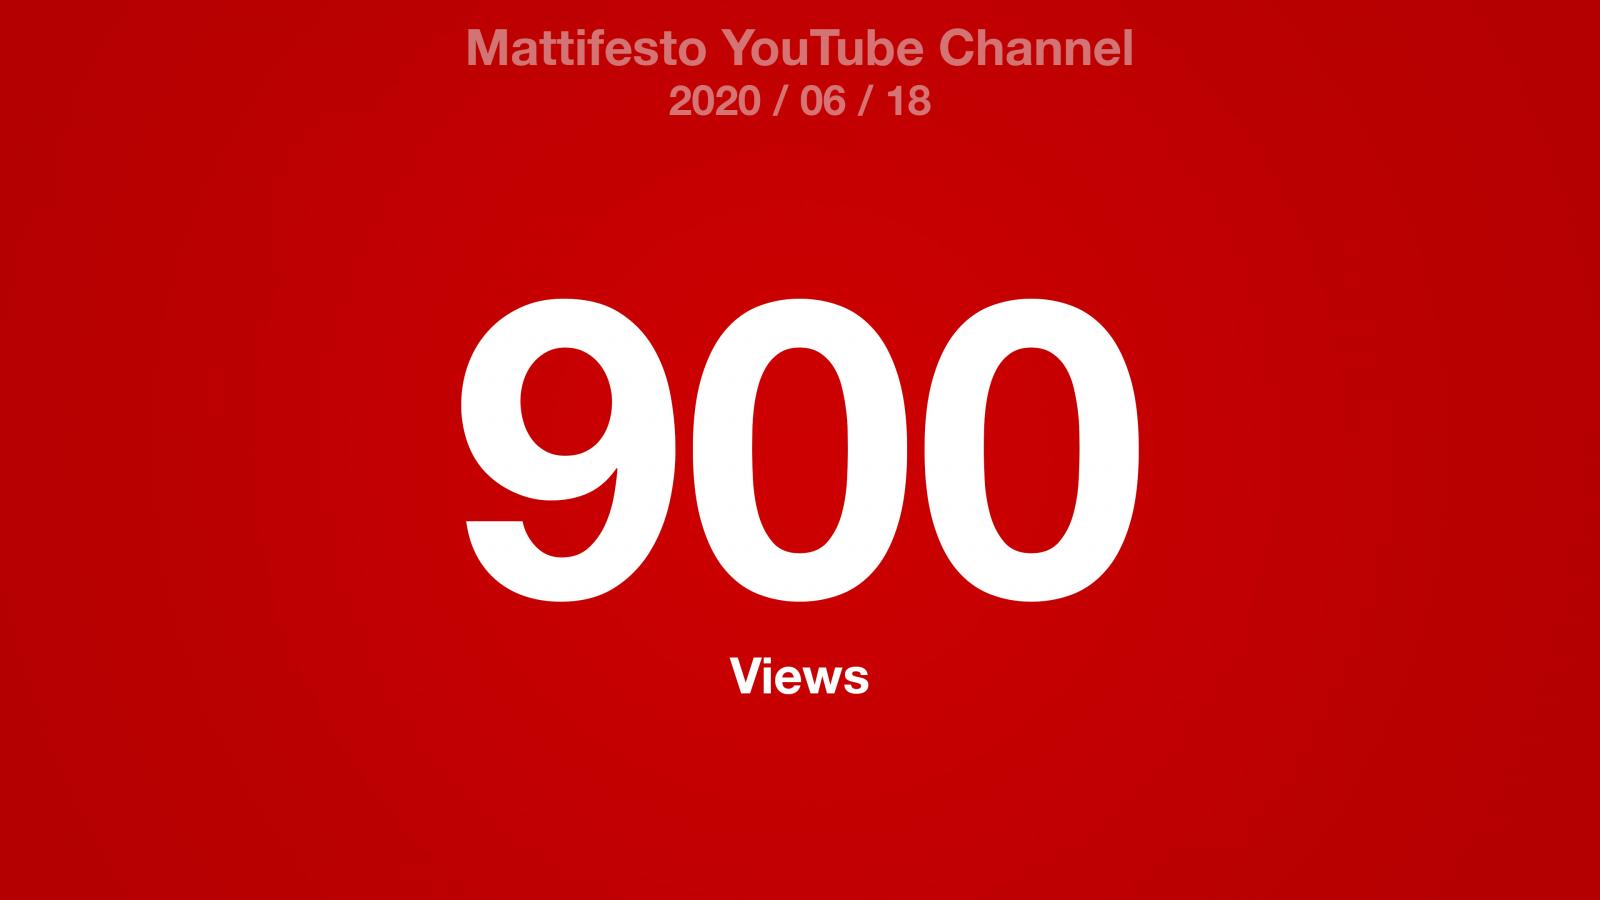 Mattifesto YouTube Channel 900 Views